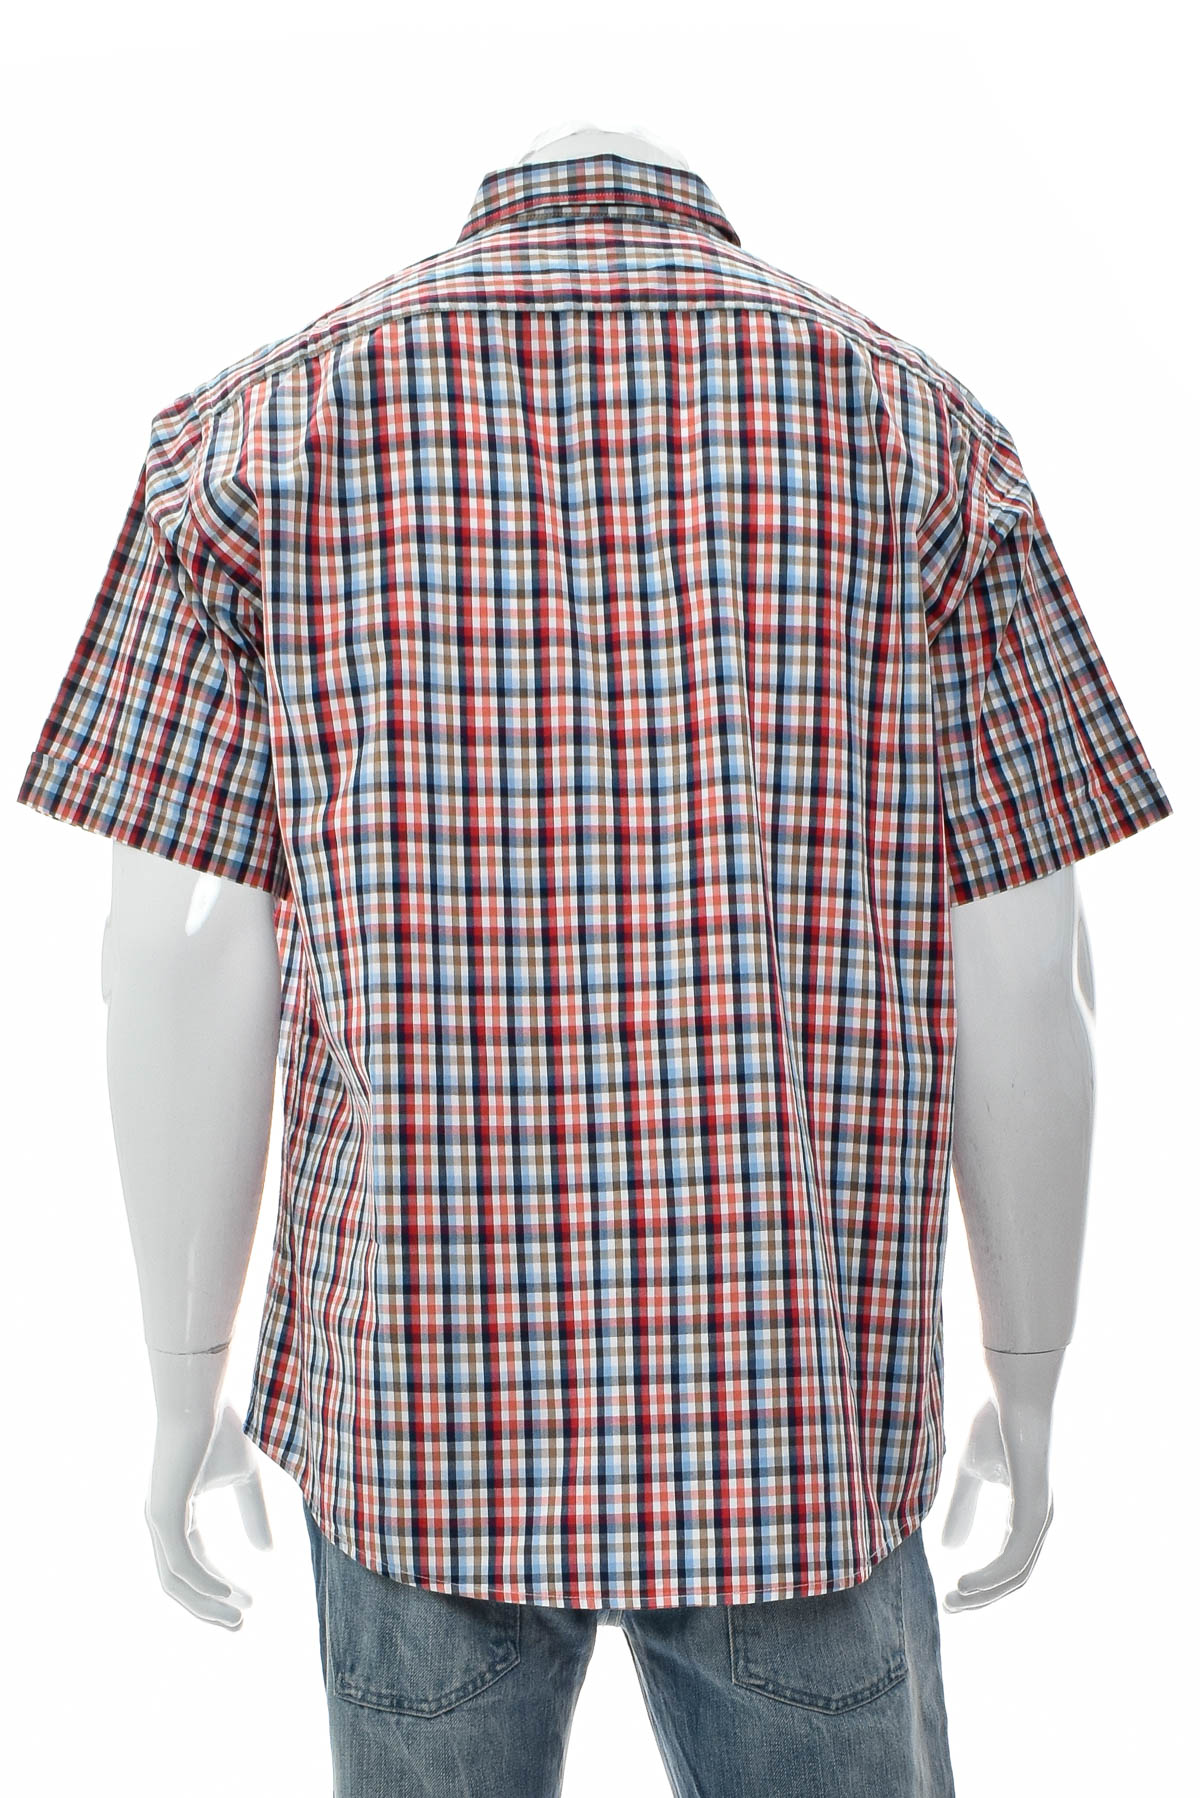 Men's shirt - Bexleys - 1